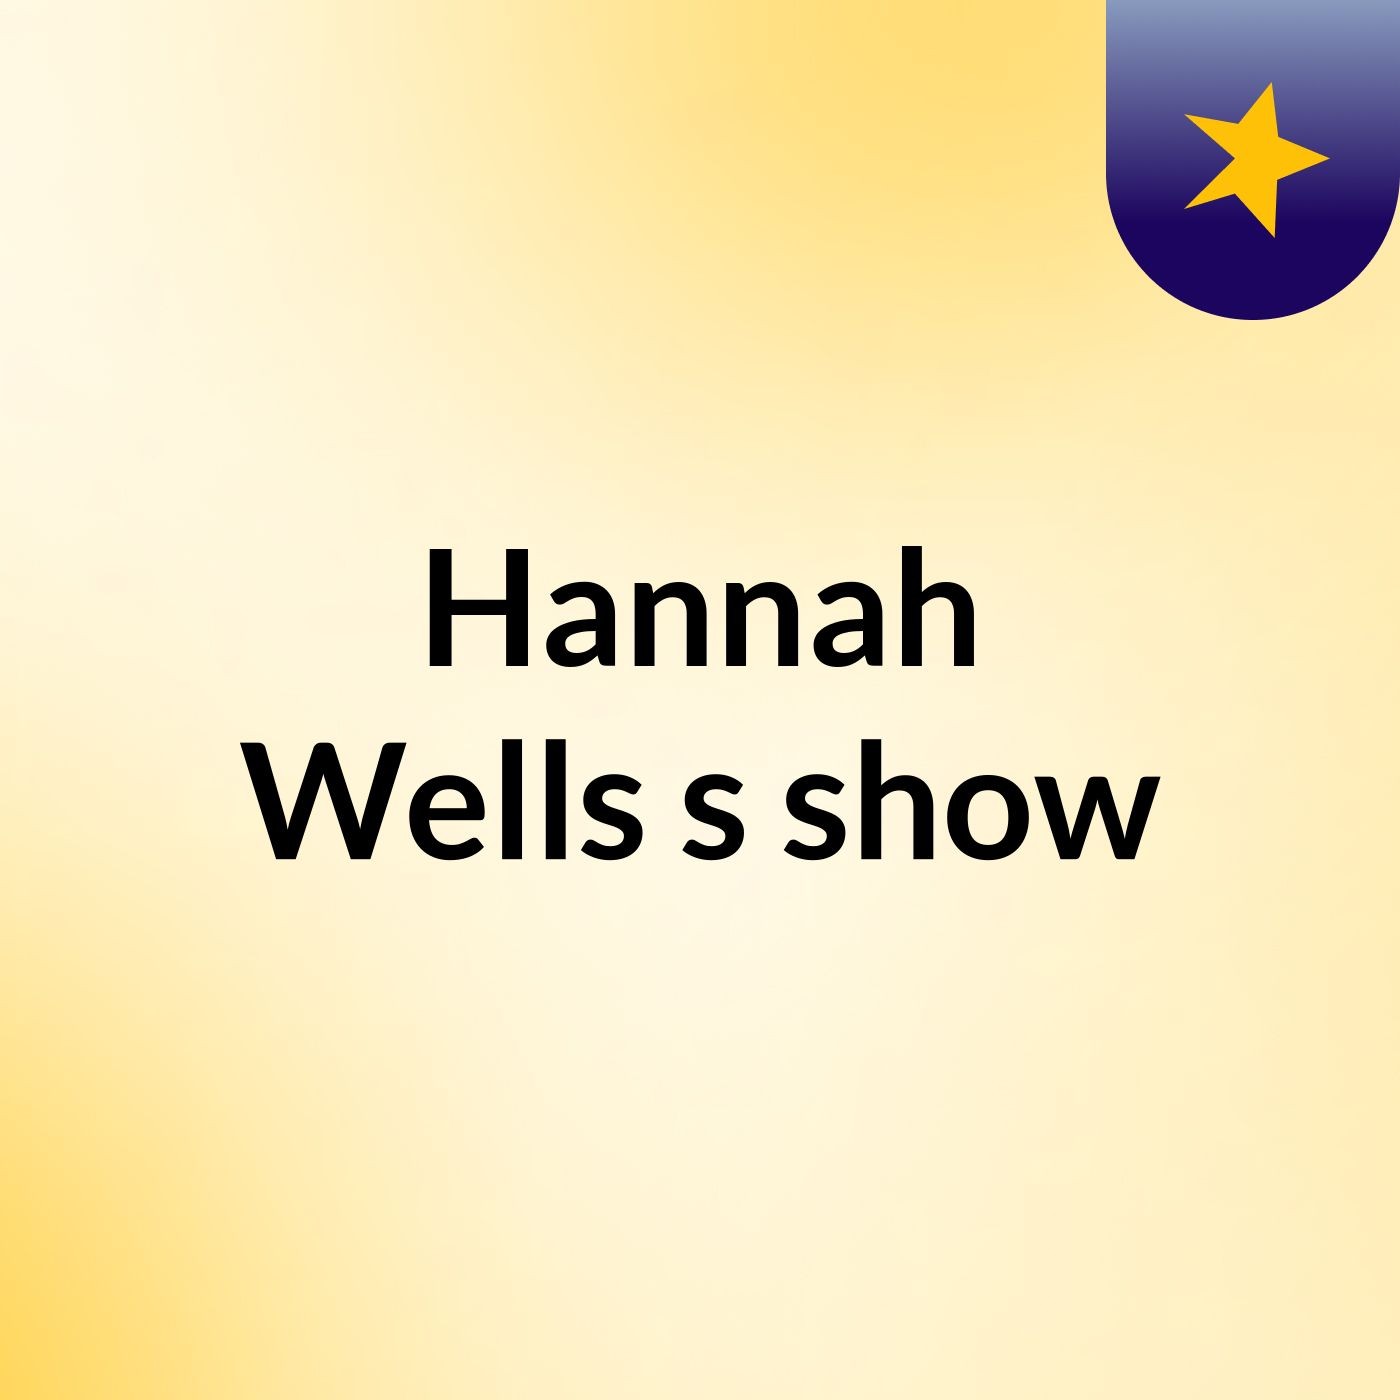 Hannah Wells's show